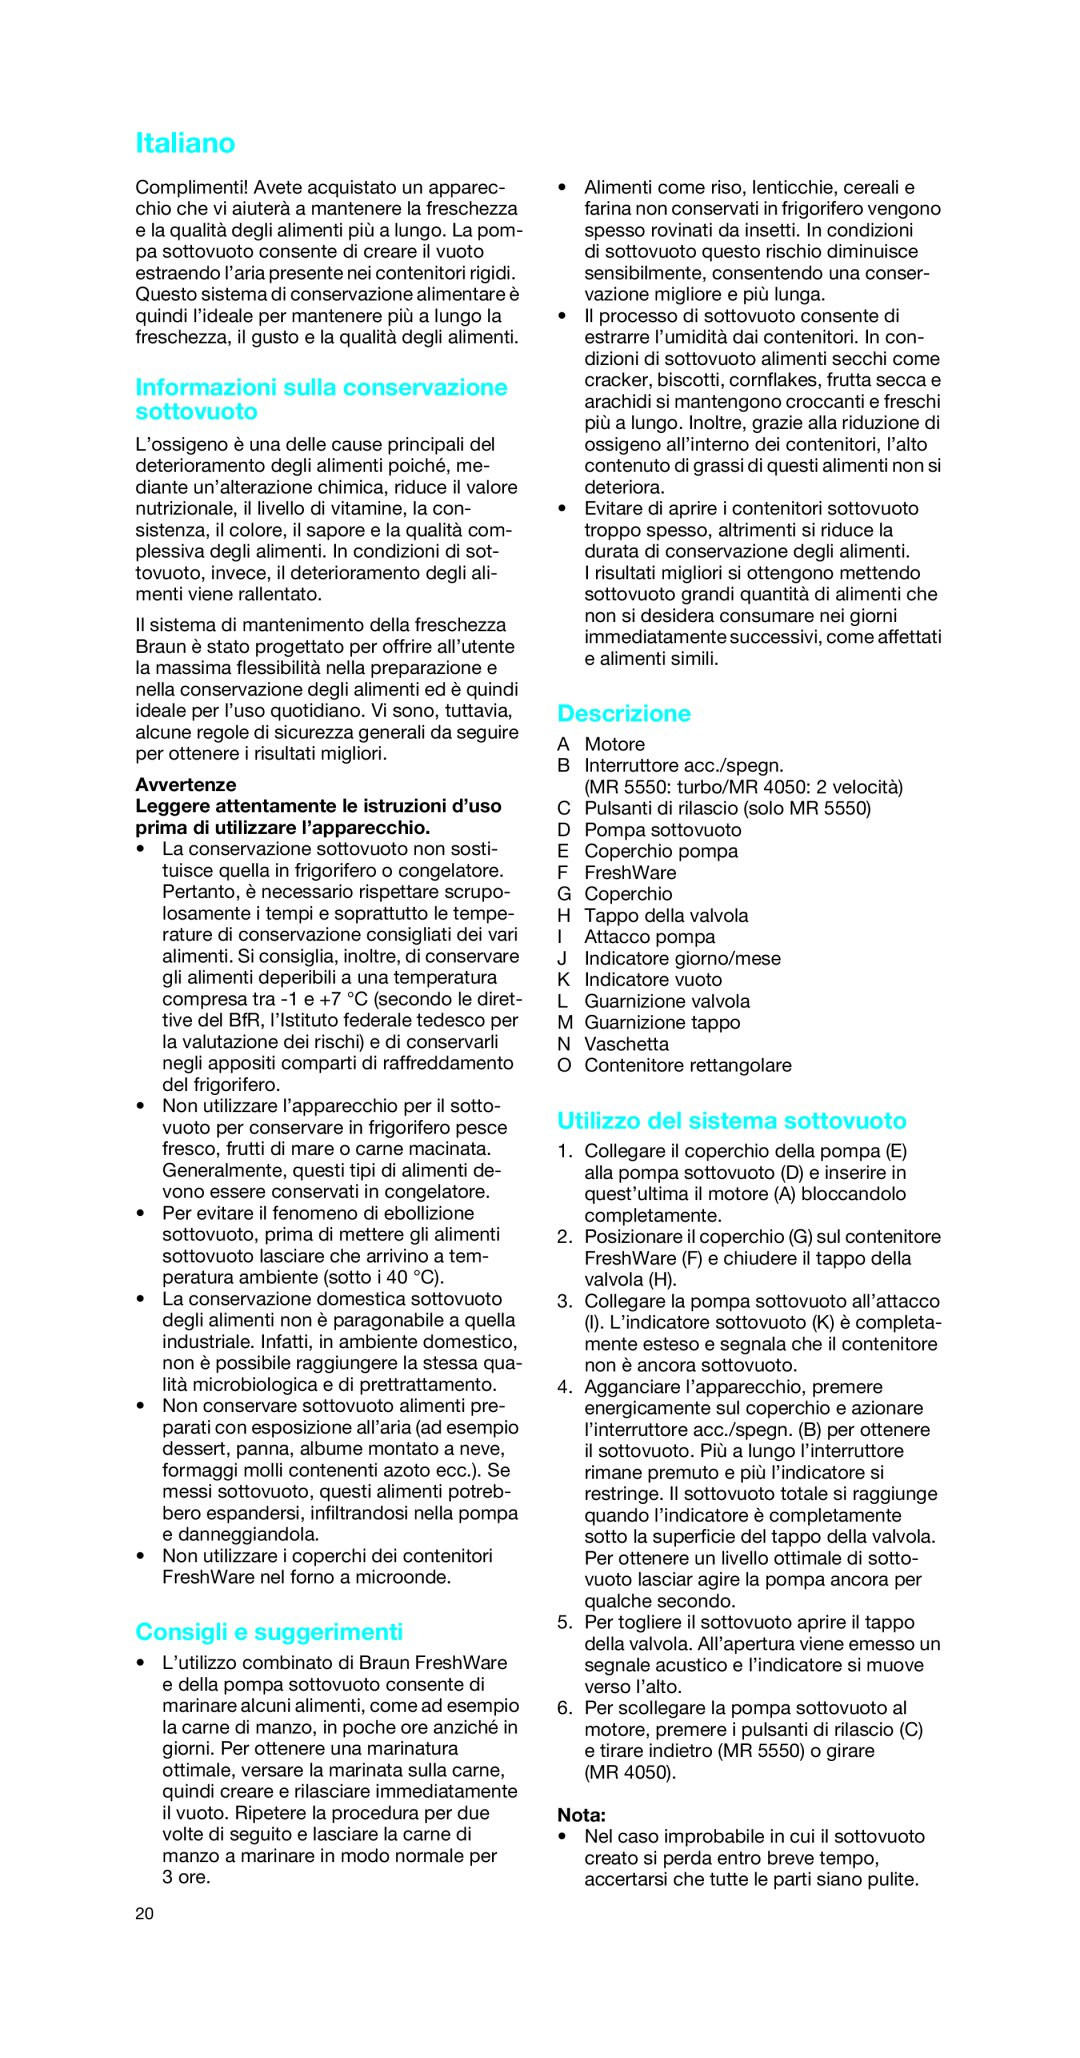 Braun MR 4050 V Italiano, Informazioni sulla conservazione sottovuoto, Consigli e suggerimenti, Descrizione, Avvertenze 